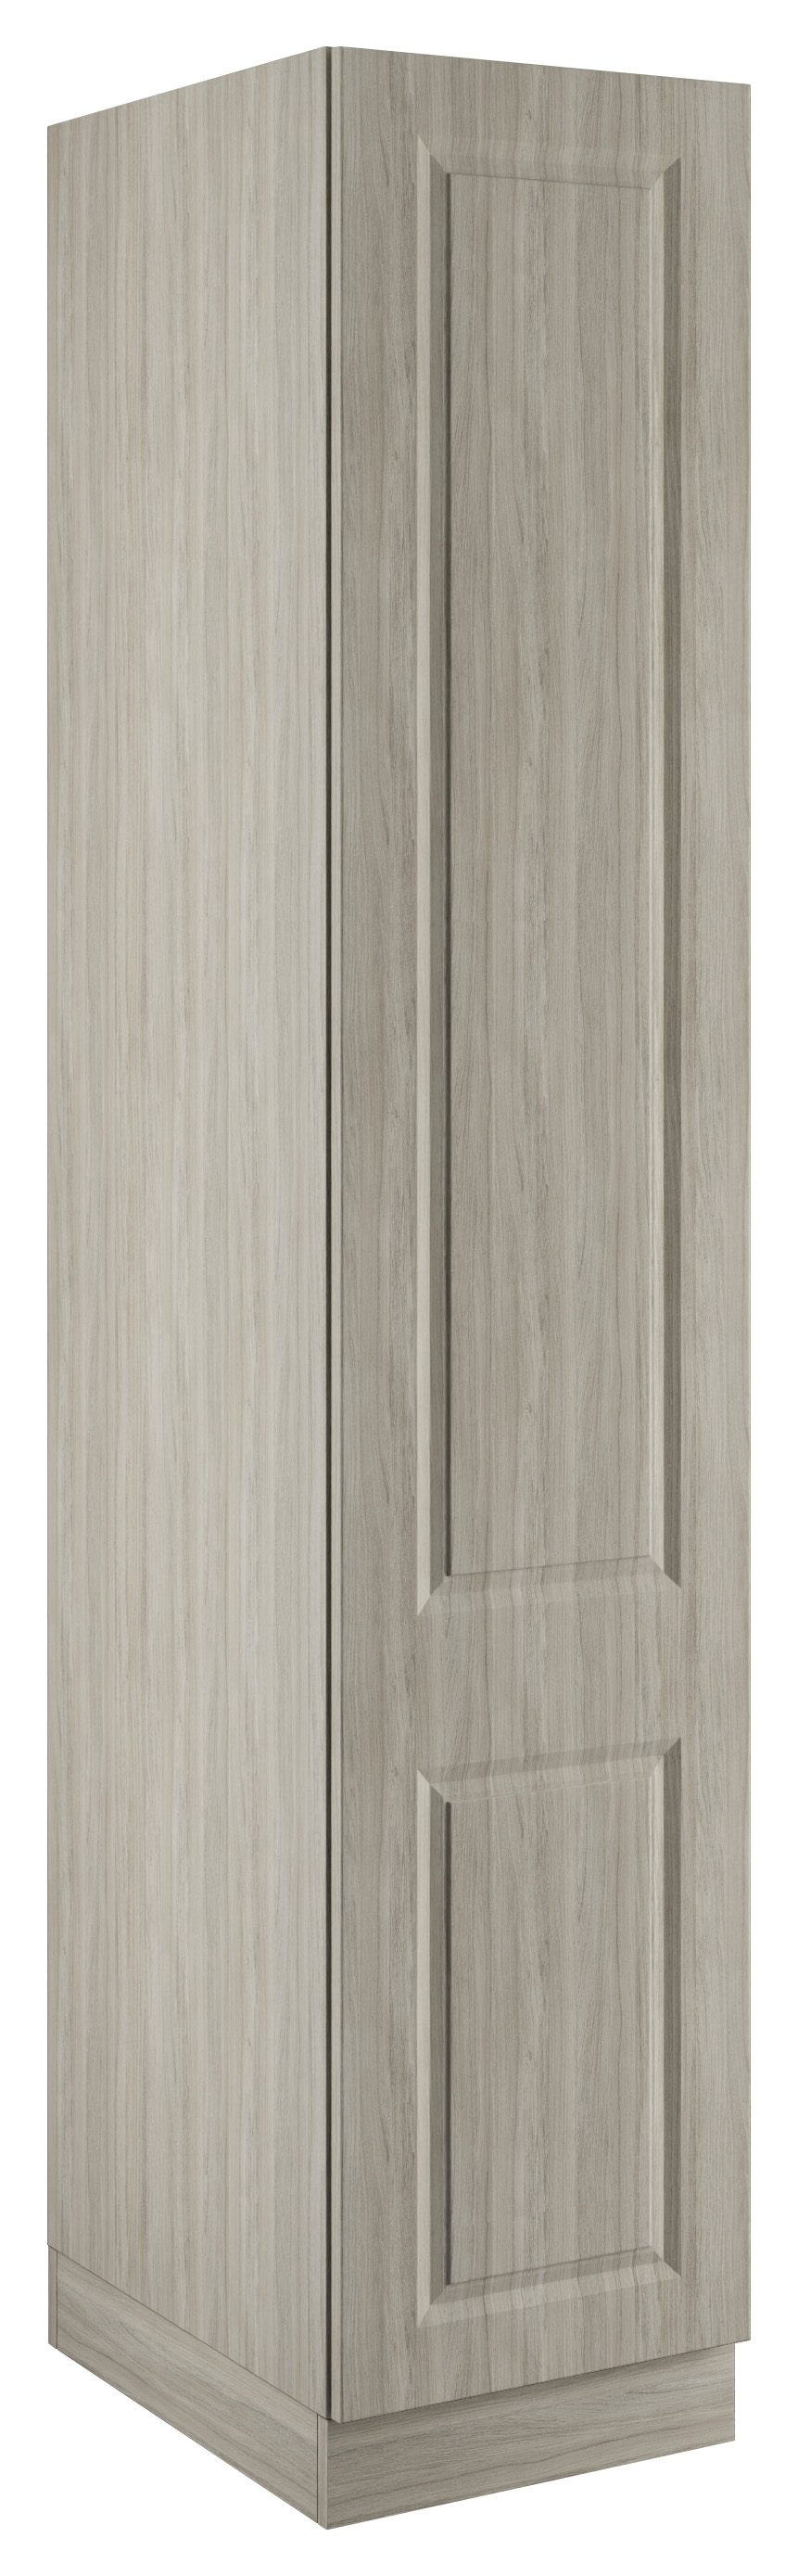 Harrogate Urban Oak Single Wardrobe with Shelves - 450 x 2260 x 608mm